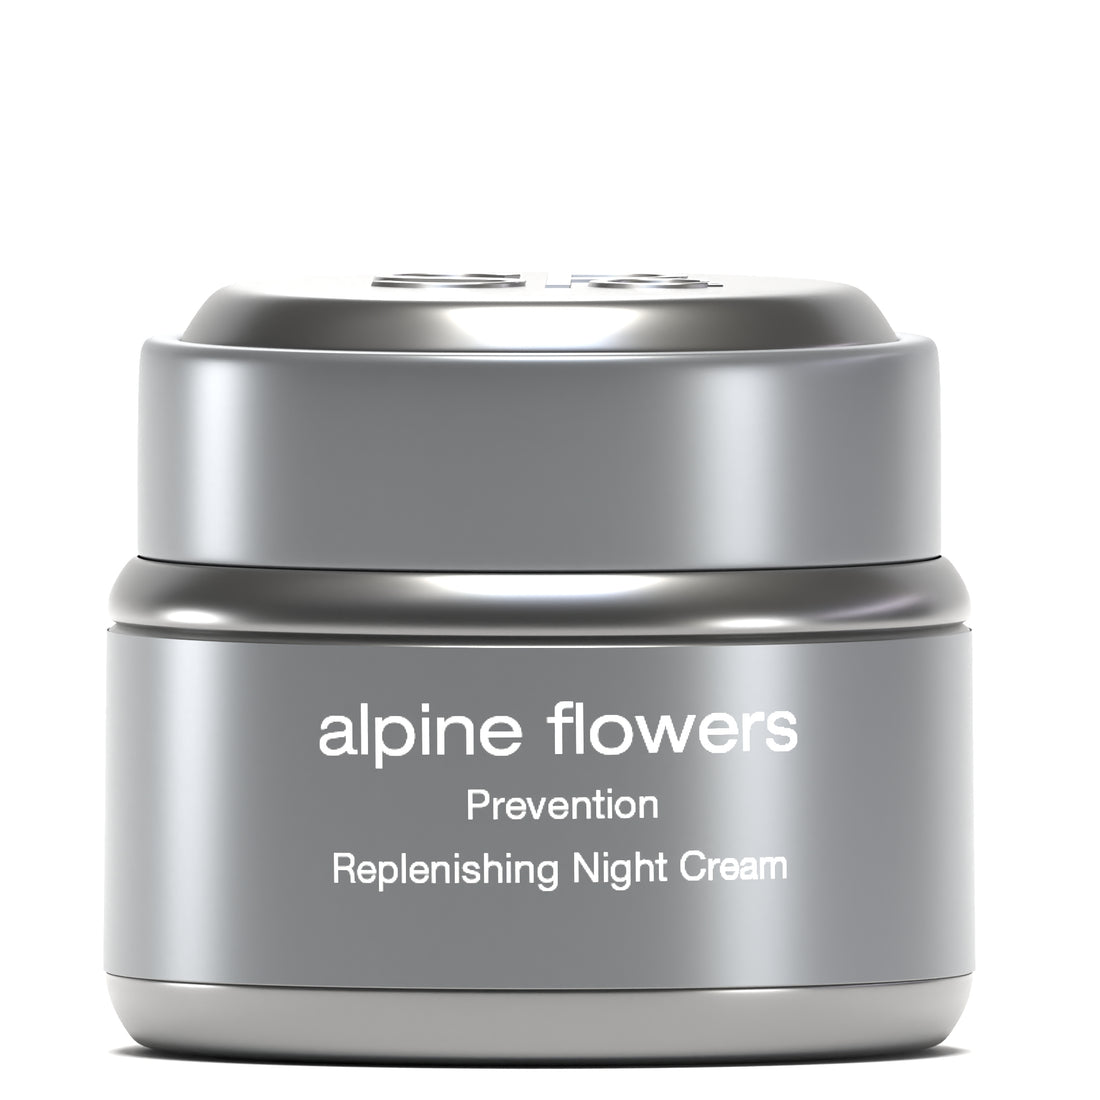 alpine flowers Replenishing Night Cream